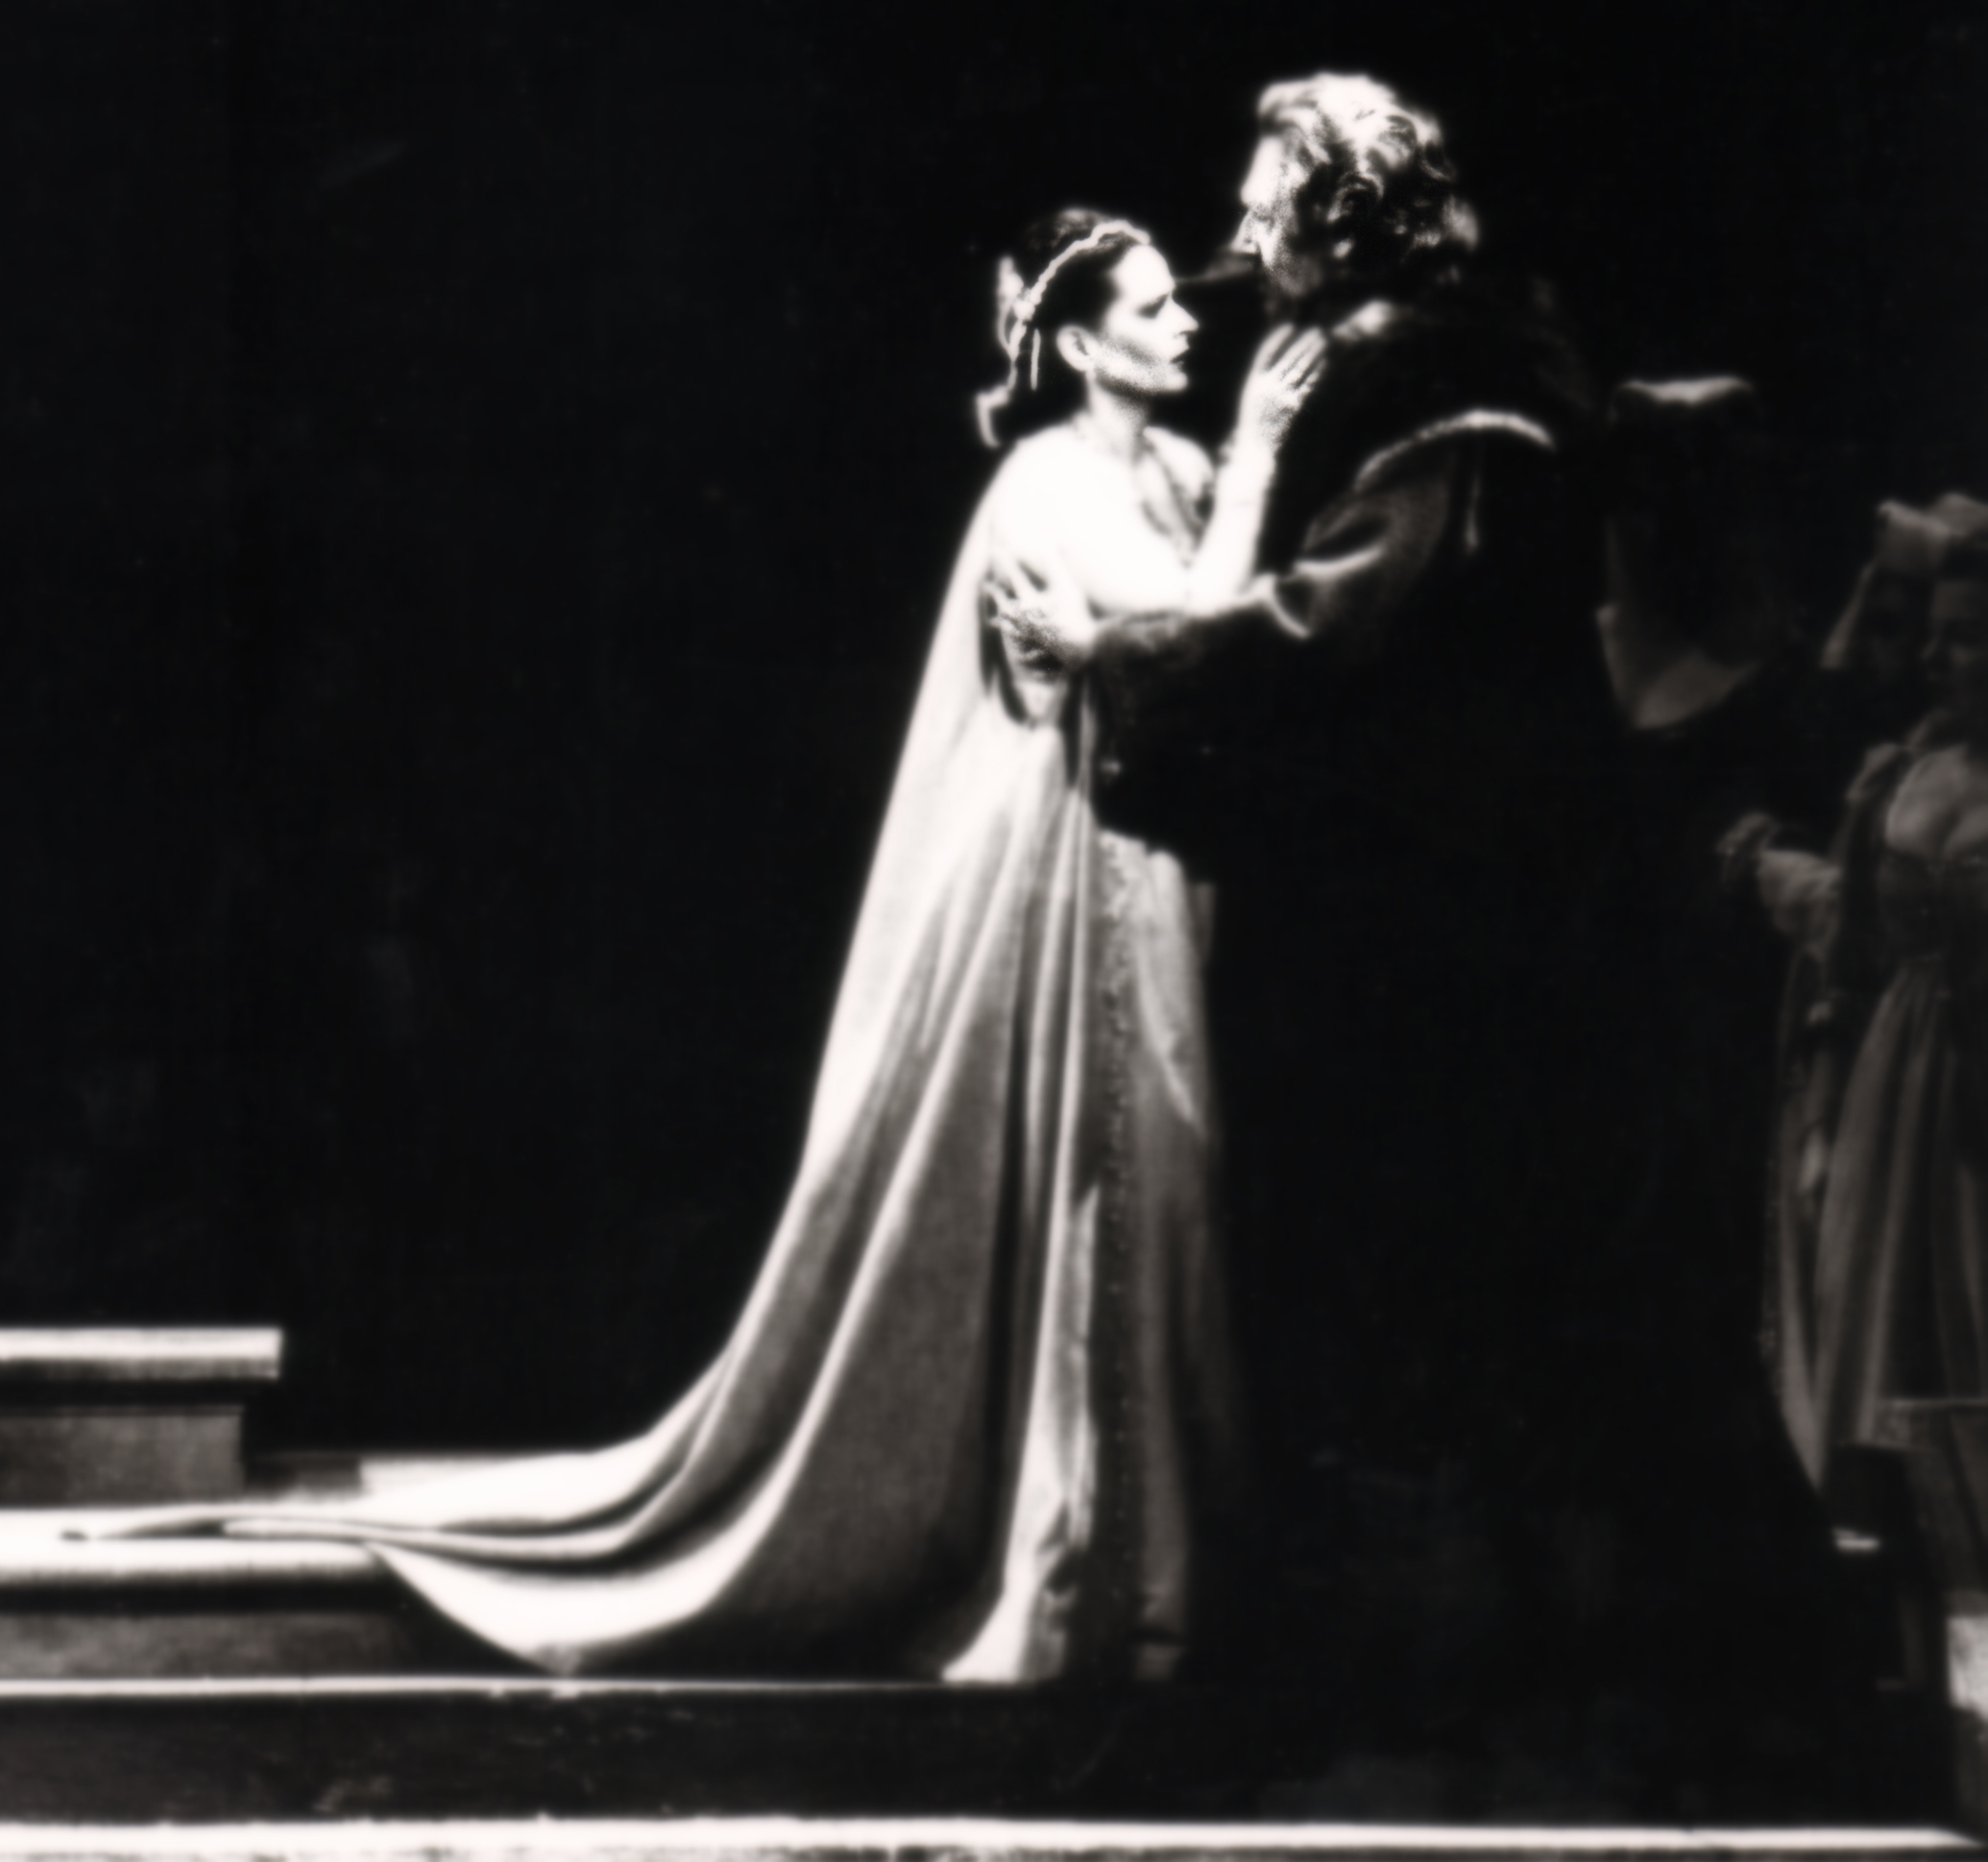 În rolul Amelia Grimaldi din opera Simon Boccanegra, împreună cu formidabilul bas Cesare Siepi în rolul Fiesco